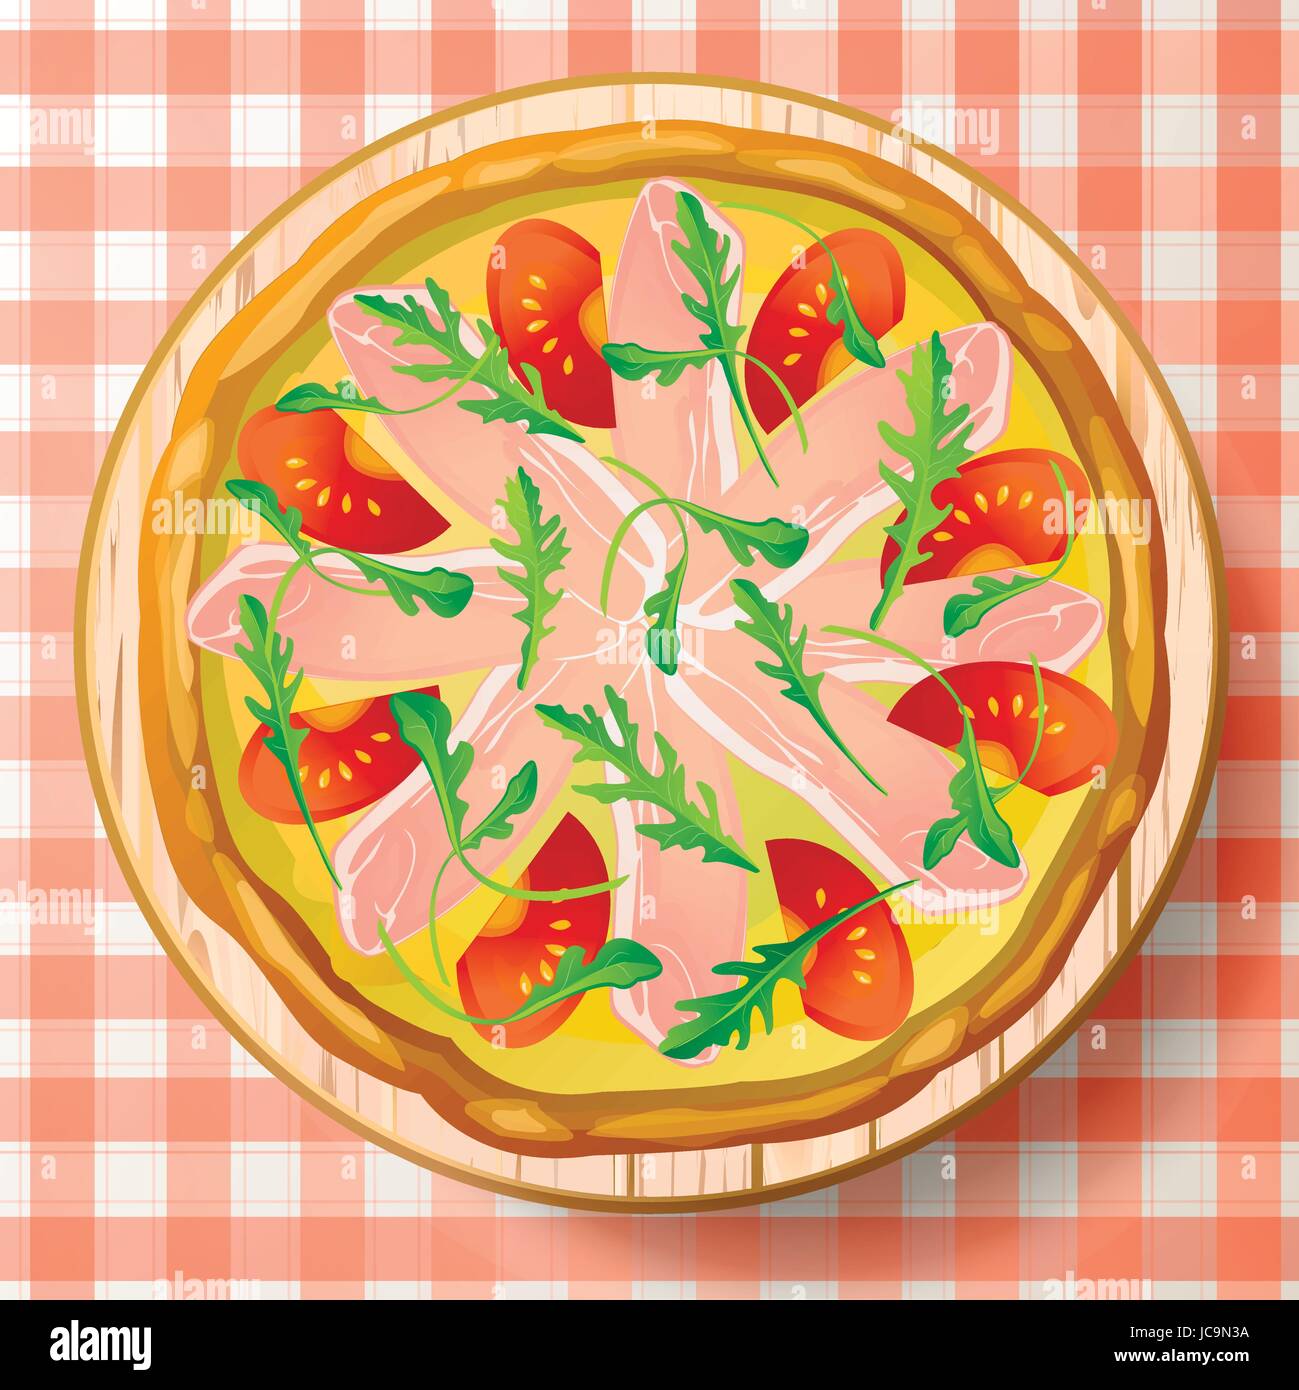 Pizza mit italienischer Schinken, Parmaschinken, Käse Mozzarella, frische Tomaten, leckere Rucola oder Rakete, Rucola, Rucoli, Rugula, Colewort, Roquette auf woode Stock Vektor